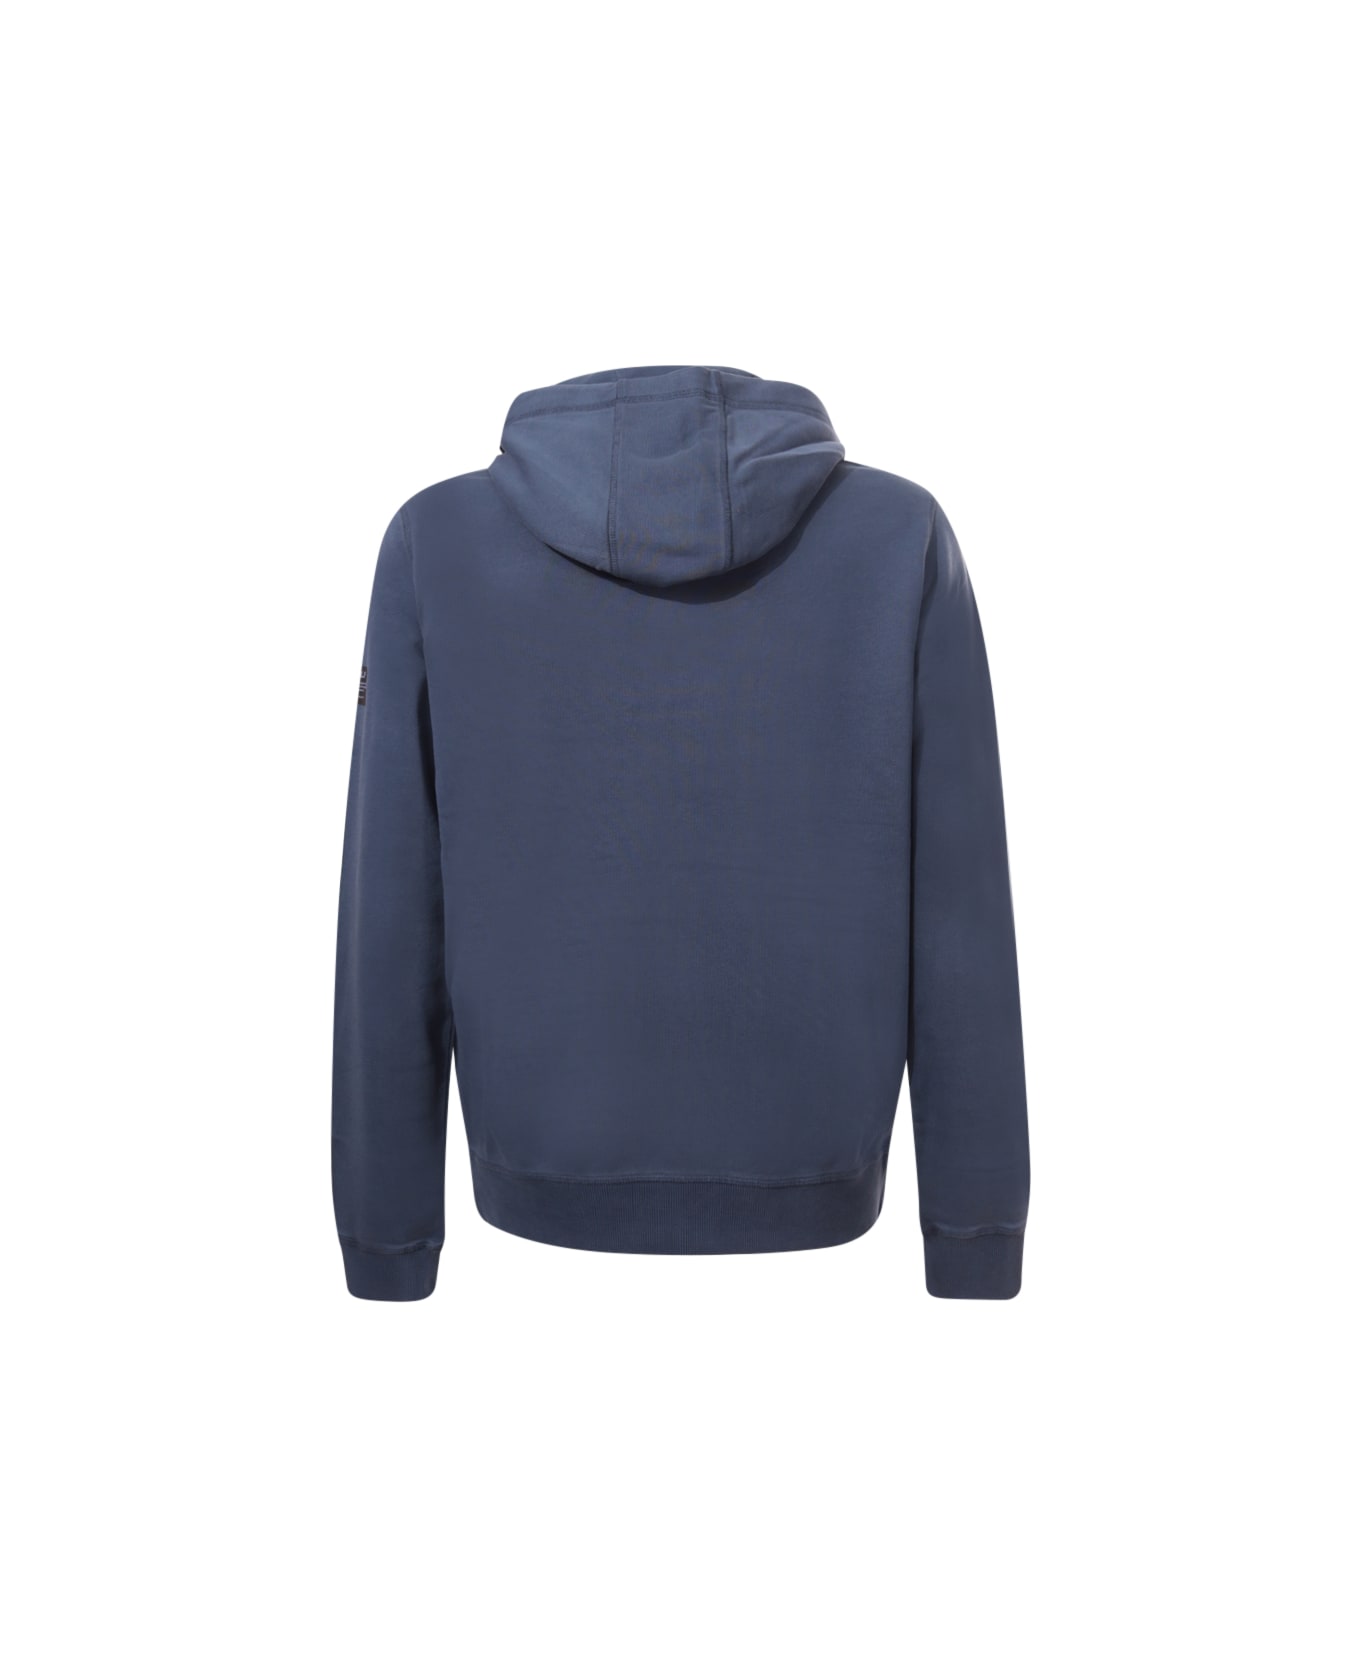 Ecoalf Sweatshirt - Blue